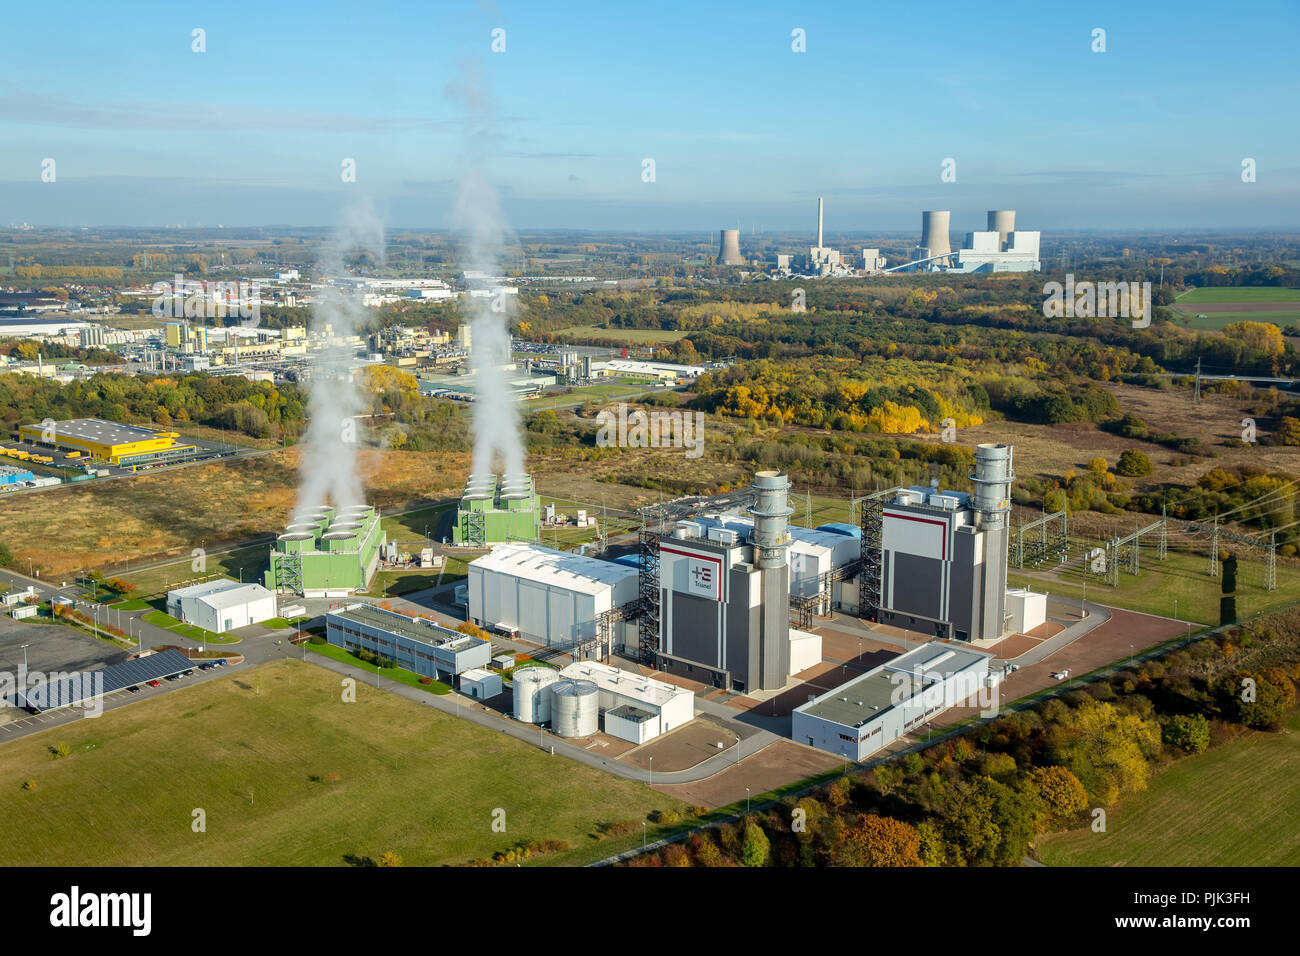 Vista aerea, gas Trianel power plant Hamm GmbH & Co. KG, GUD, nube di fumo, vapore acqueo, la turbina a gas impianti di potenza in funzionamento, Hamm, la zona della Ruhr, Nord Reno-Westfalia, Germania Foto Stock